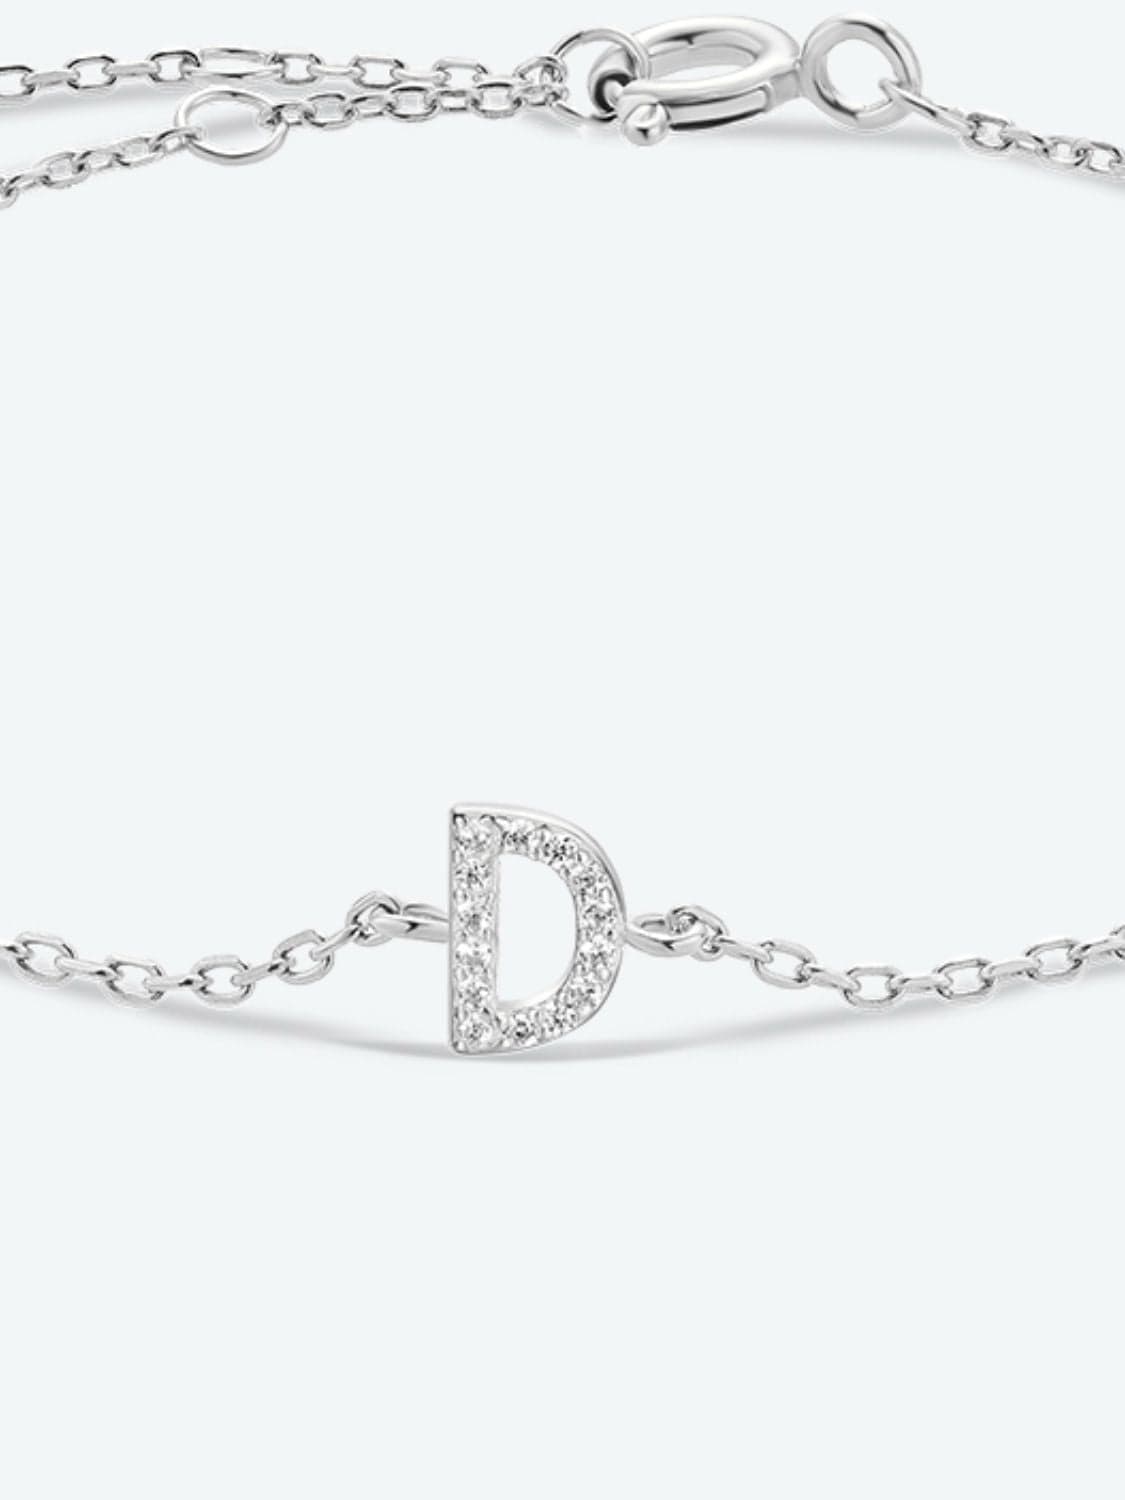 A To F Zircon 925 Sterling Silver Bracelet - CLASSY CLOSET BOUTIQUEA To F Zircon 925 Sterling Silver Braceletjewelry101300165472867101300165472867D-SilverOne Size